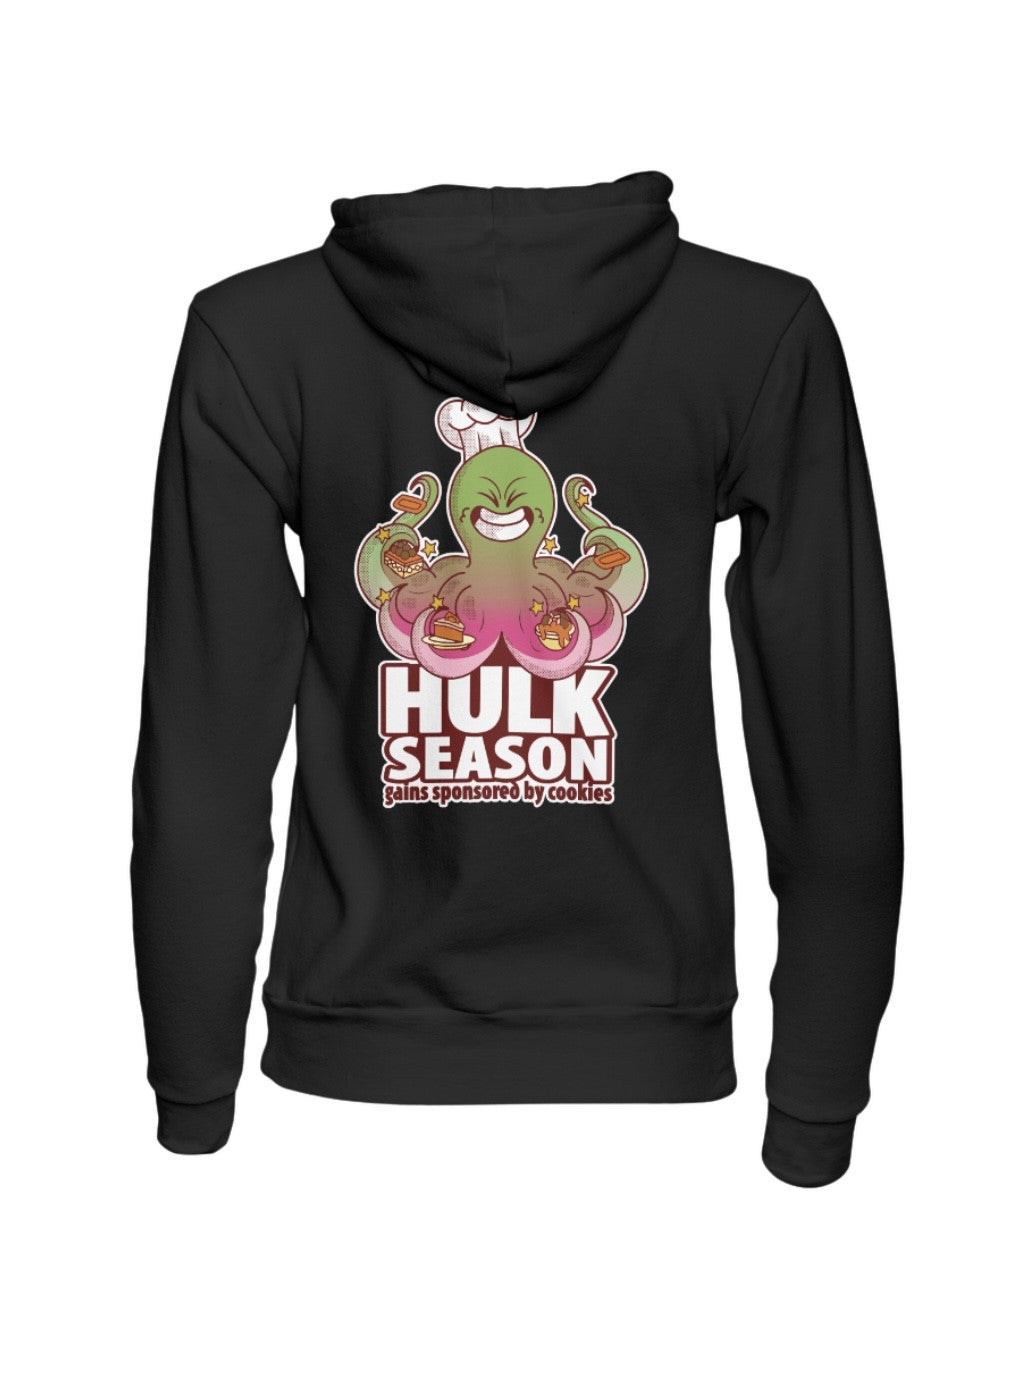 Hulk Season Hoody